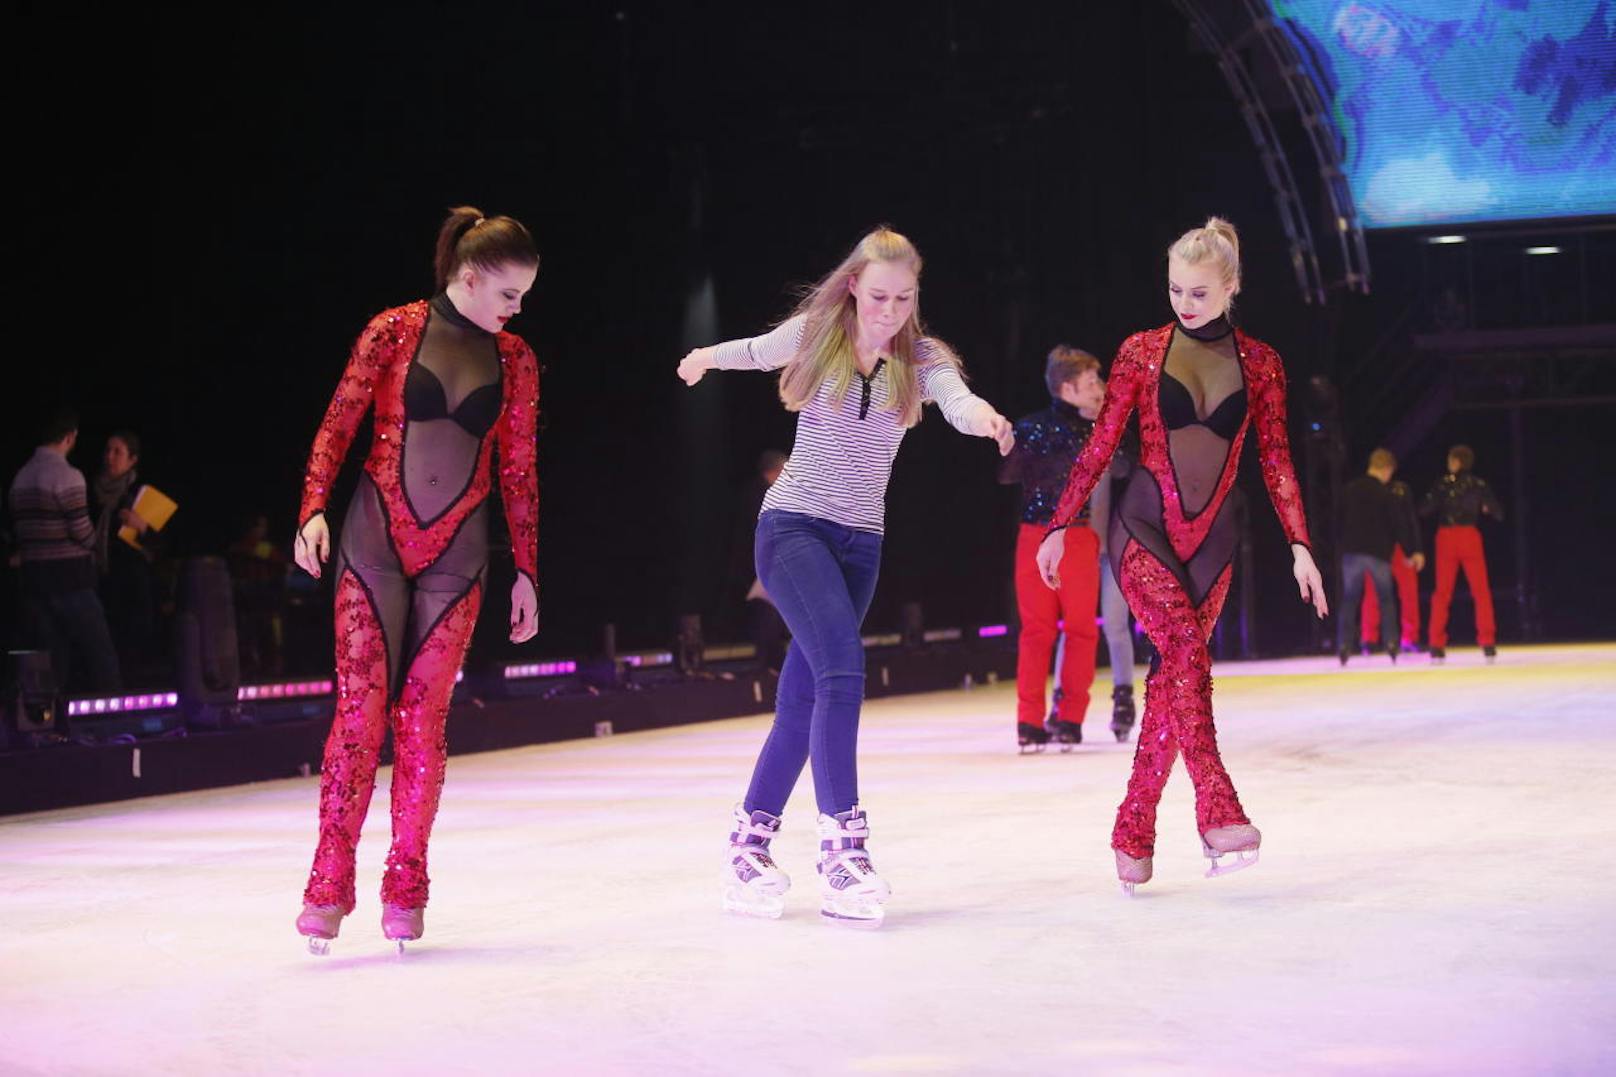 40 glückliche "Meet & Skate"-Gewinner flitzten im Jänner 2018 mit den Showstars von "Holiday on Ice" über die spiegelglatte Bühne in der Stadthalle (Wien-Fünfhaus).